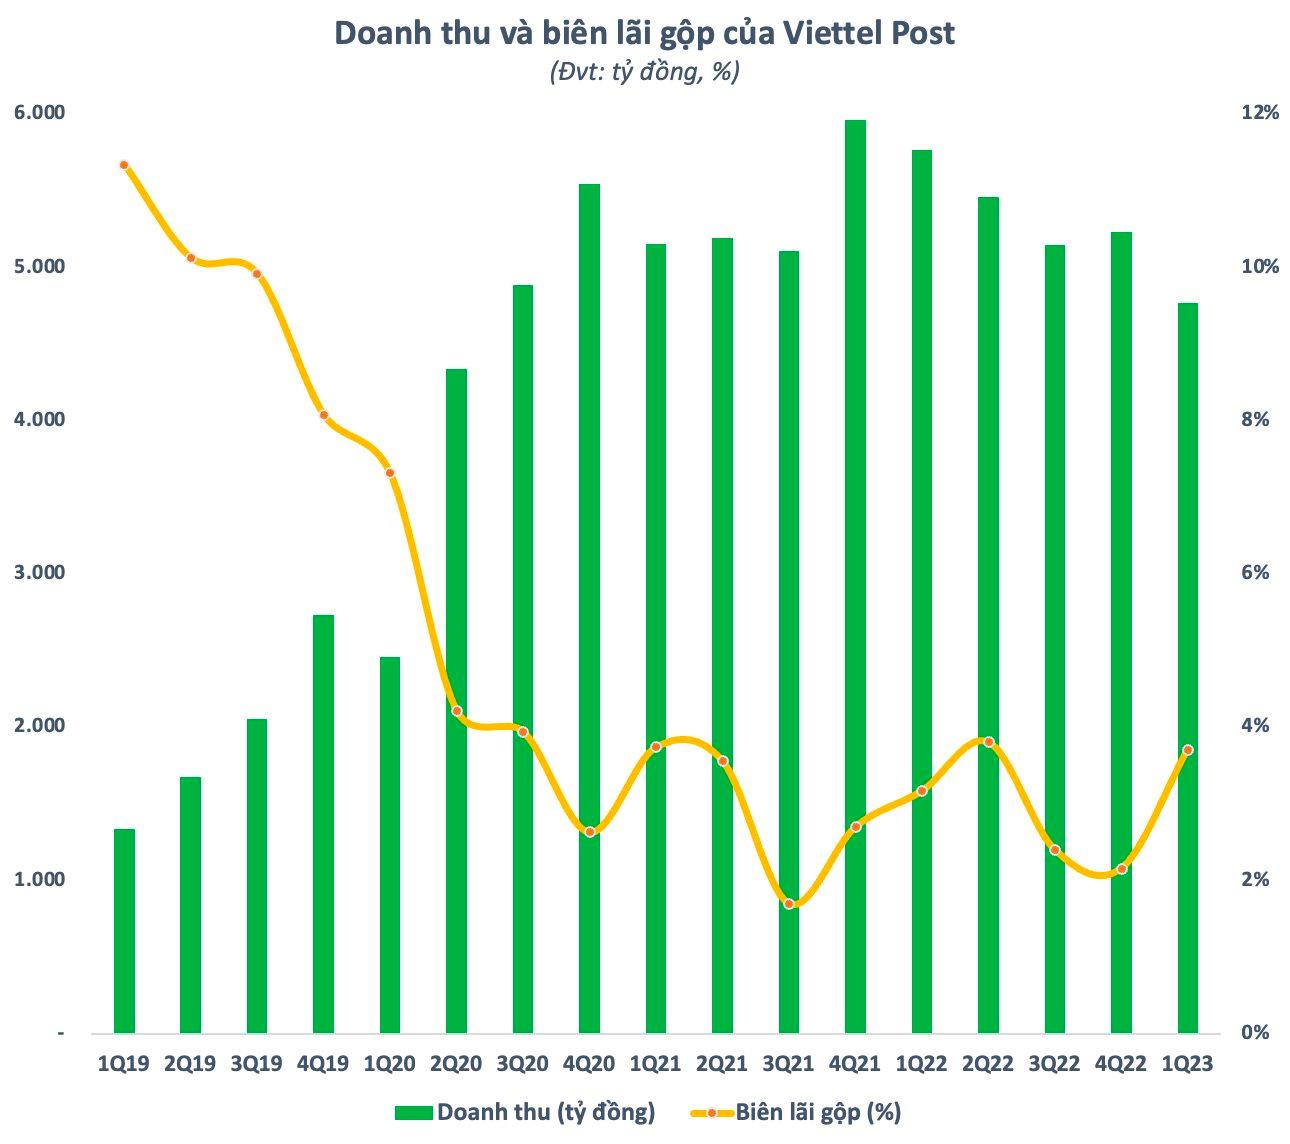 Doanh thu và biên lãi gộp của Viettel Post